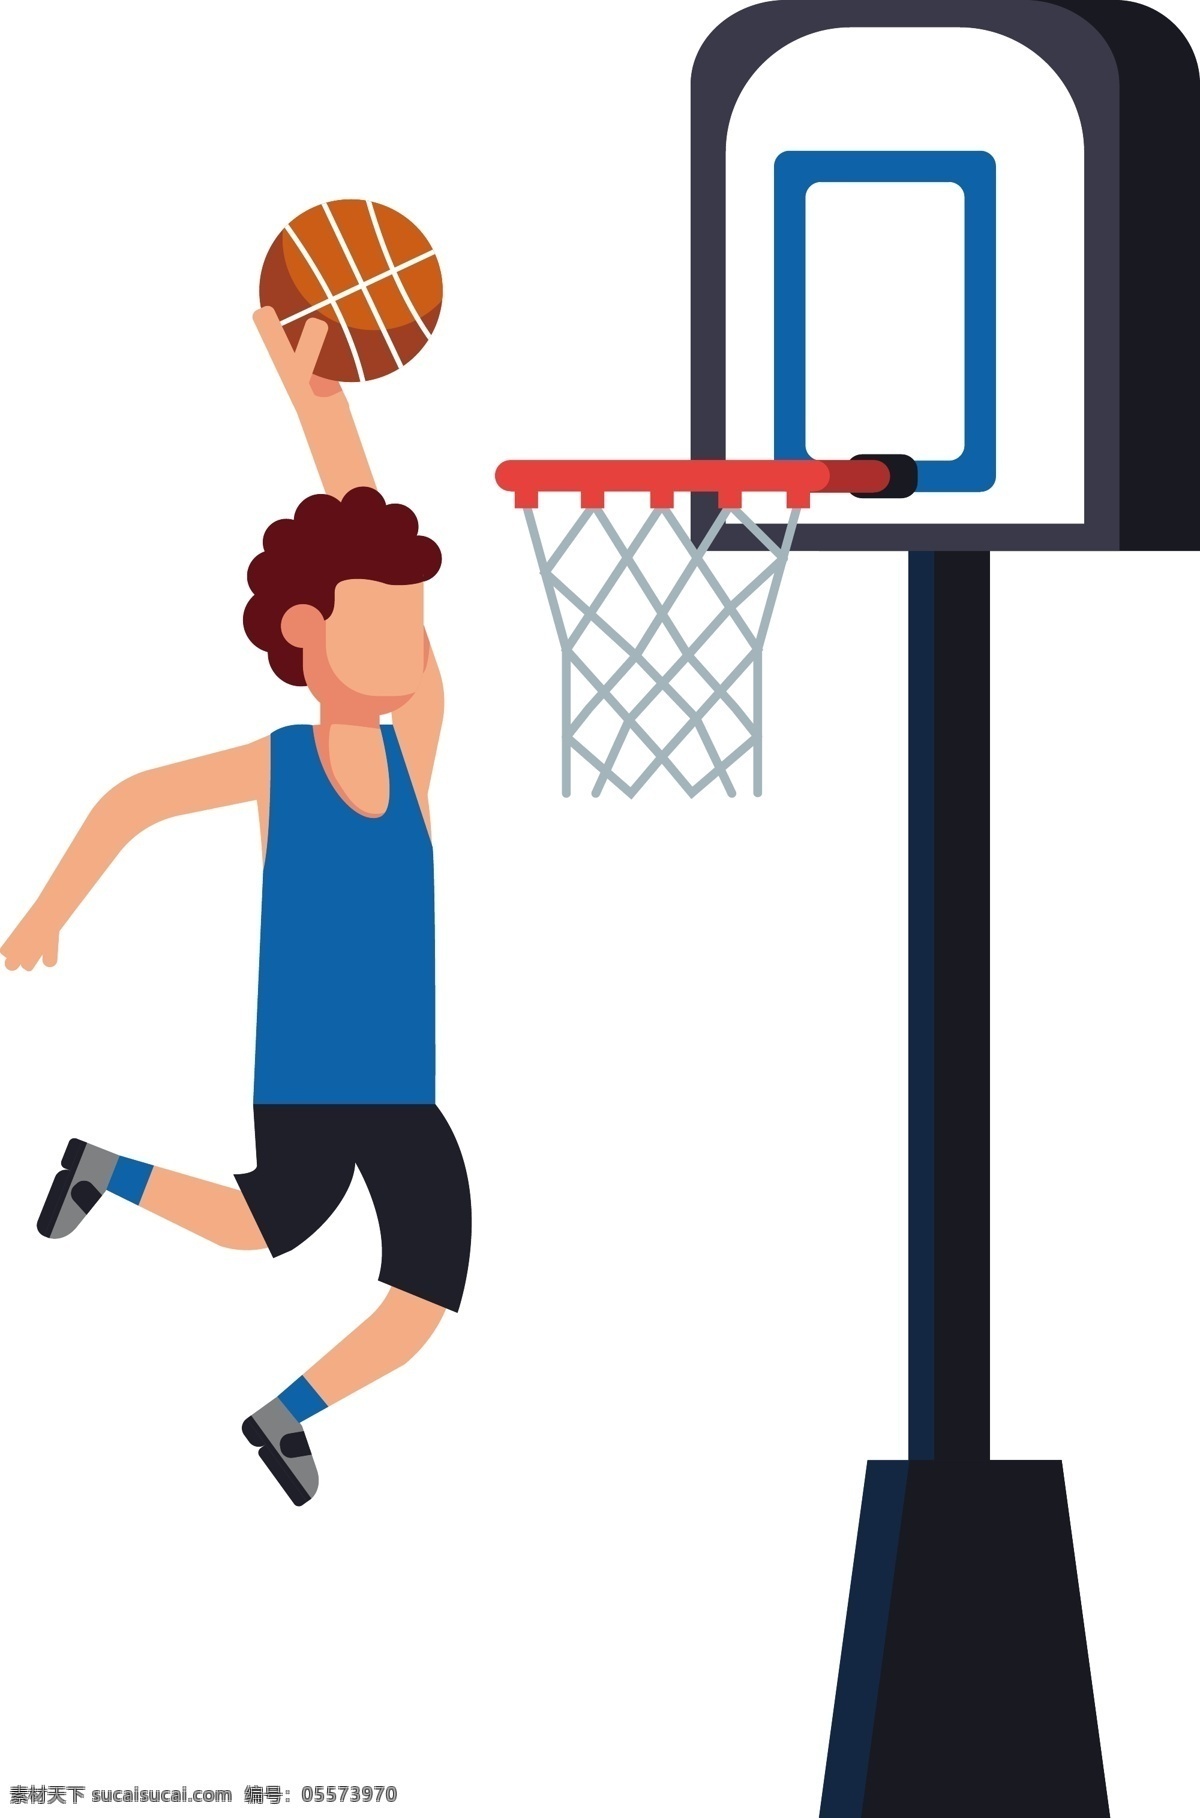 矢量 篮球 运动 插画 卡通 手绘 精美 海报插画 广告插画 小清新 简约风 装饰图案 篮球运动